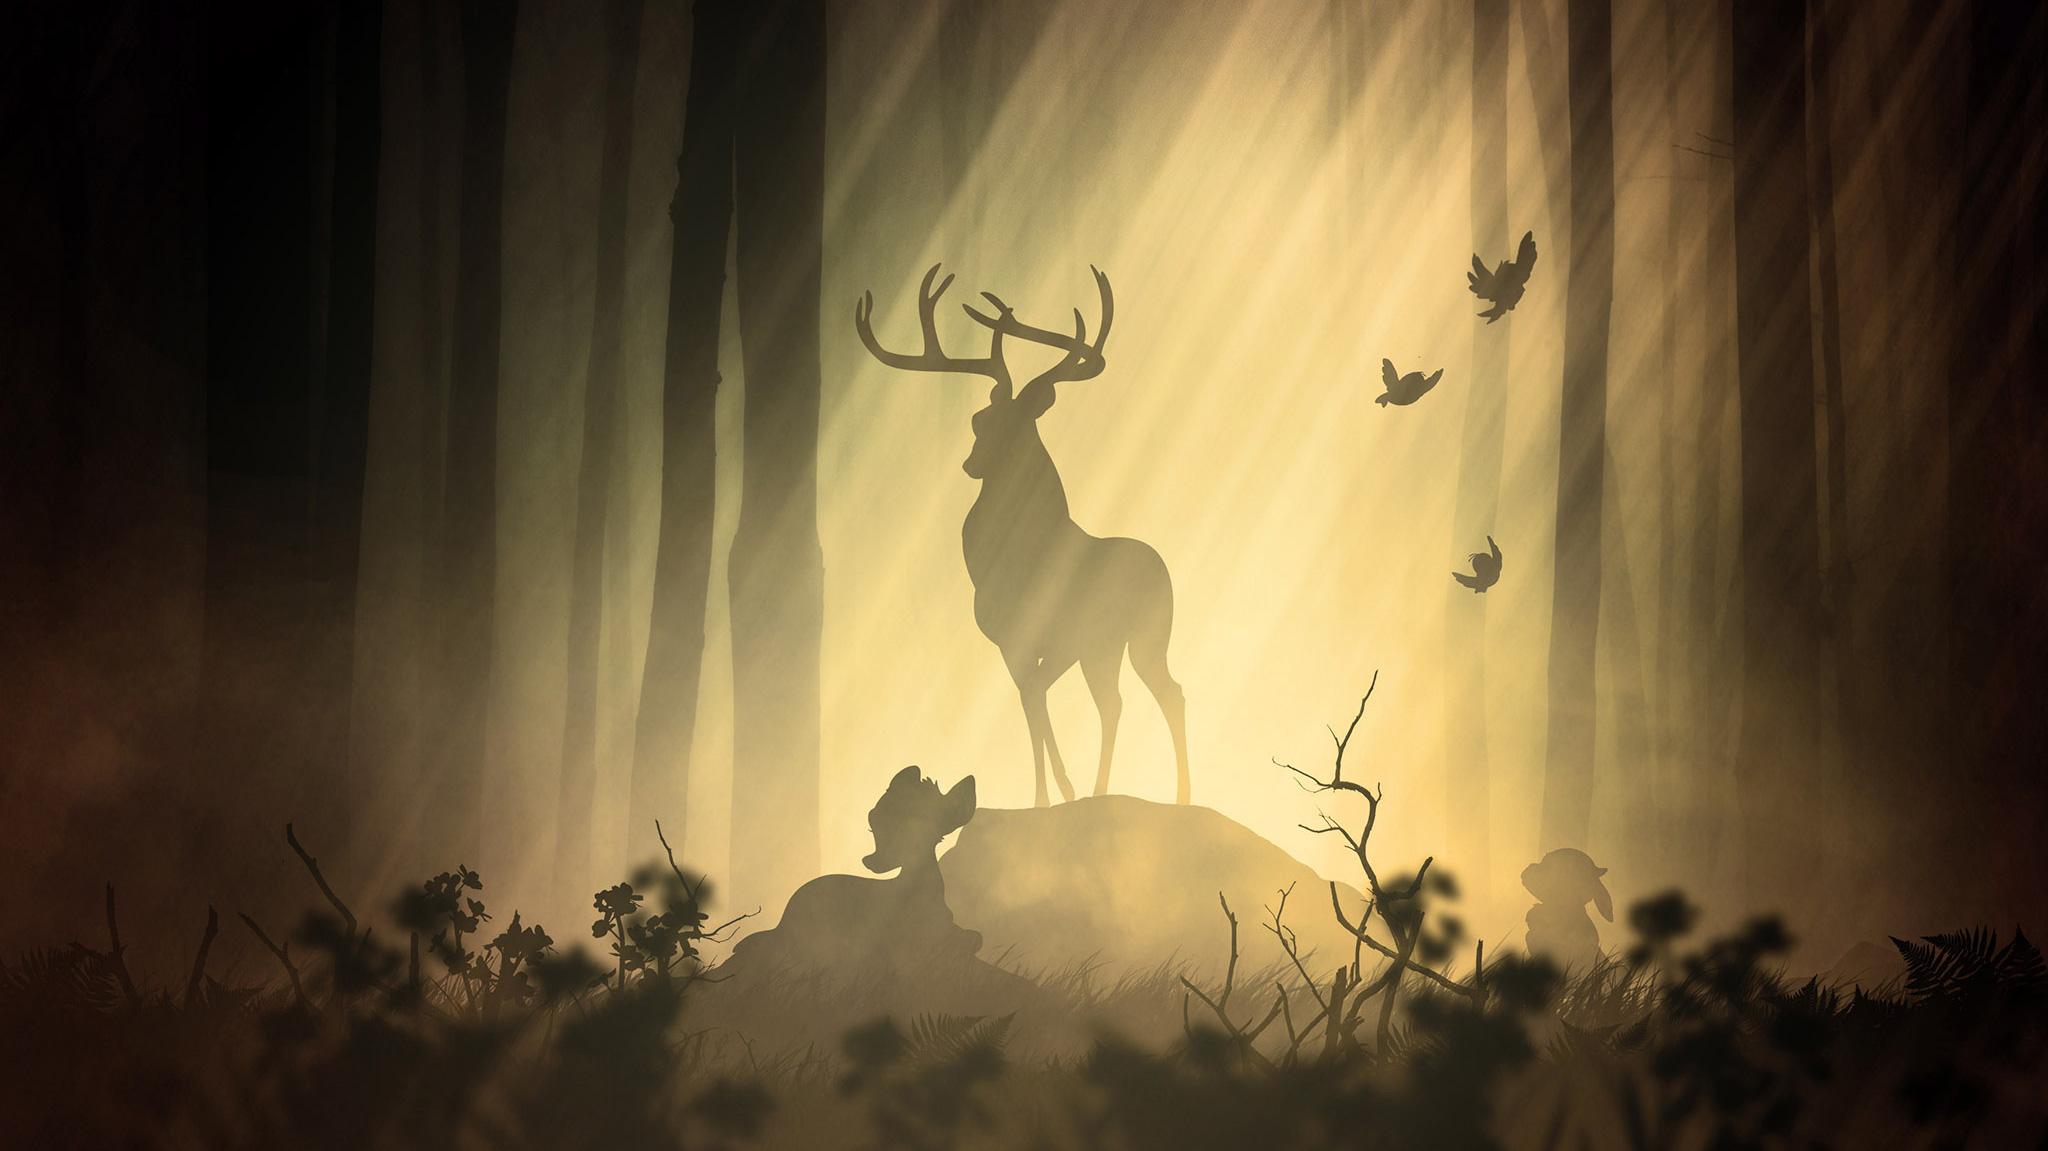 Deer Fantasy Forest HD Artist 4k Wallpaper Image Background